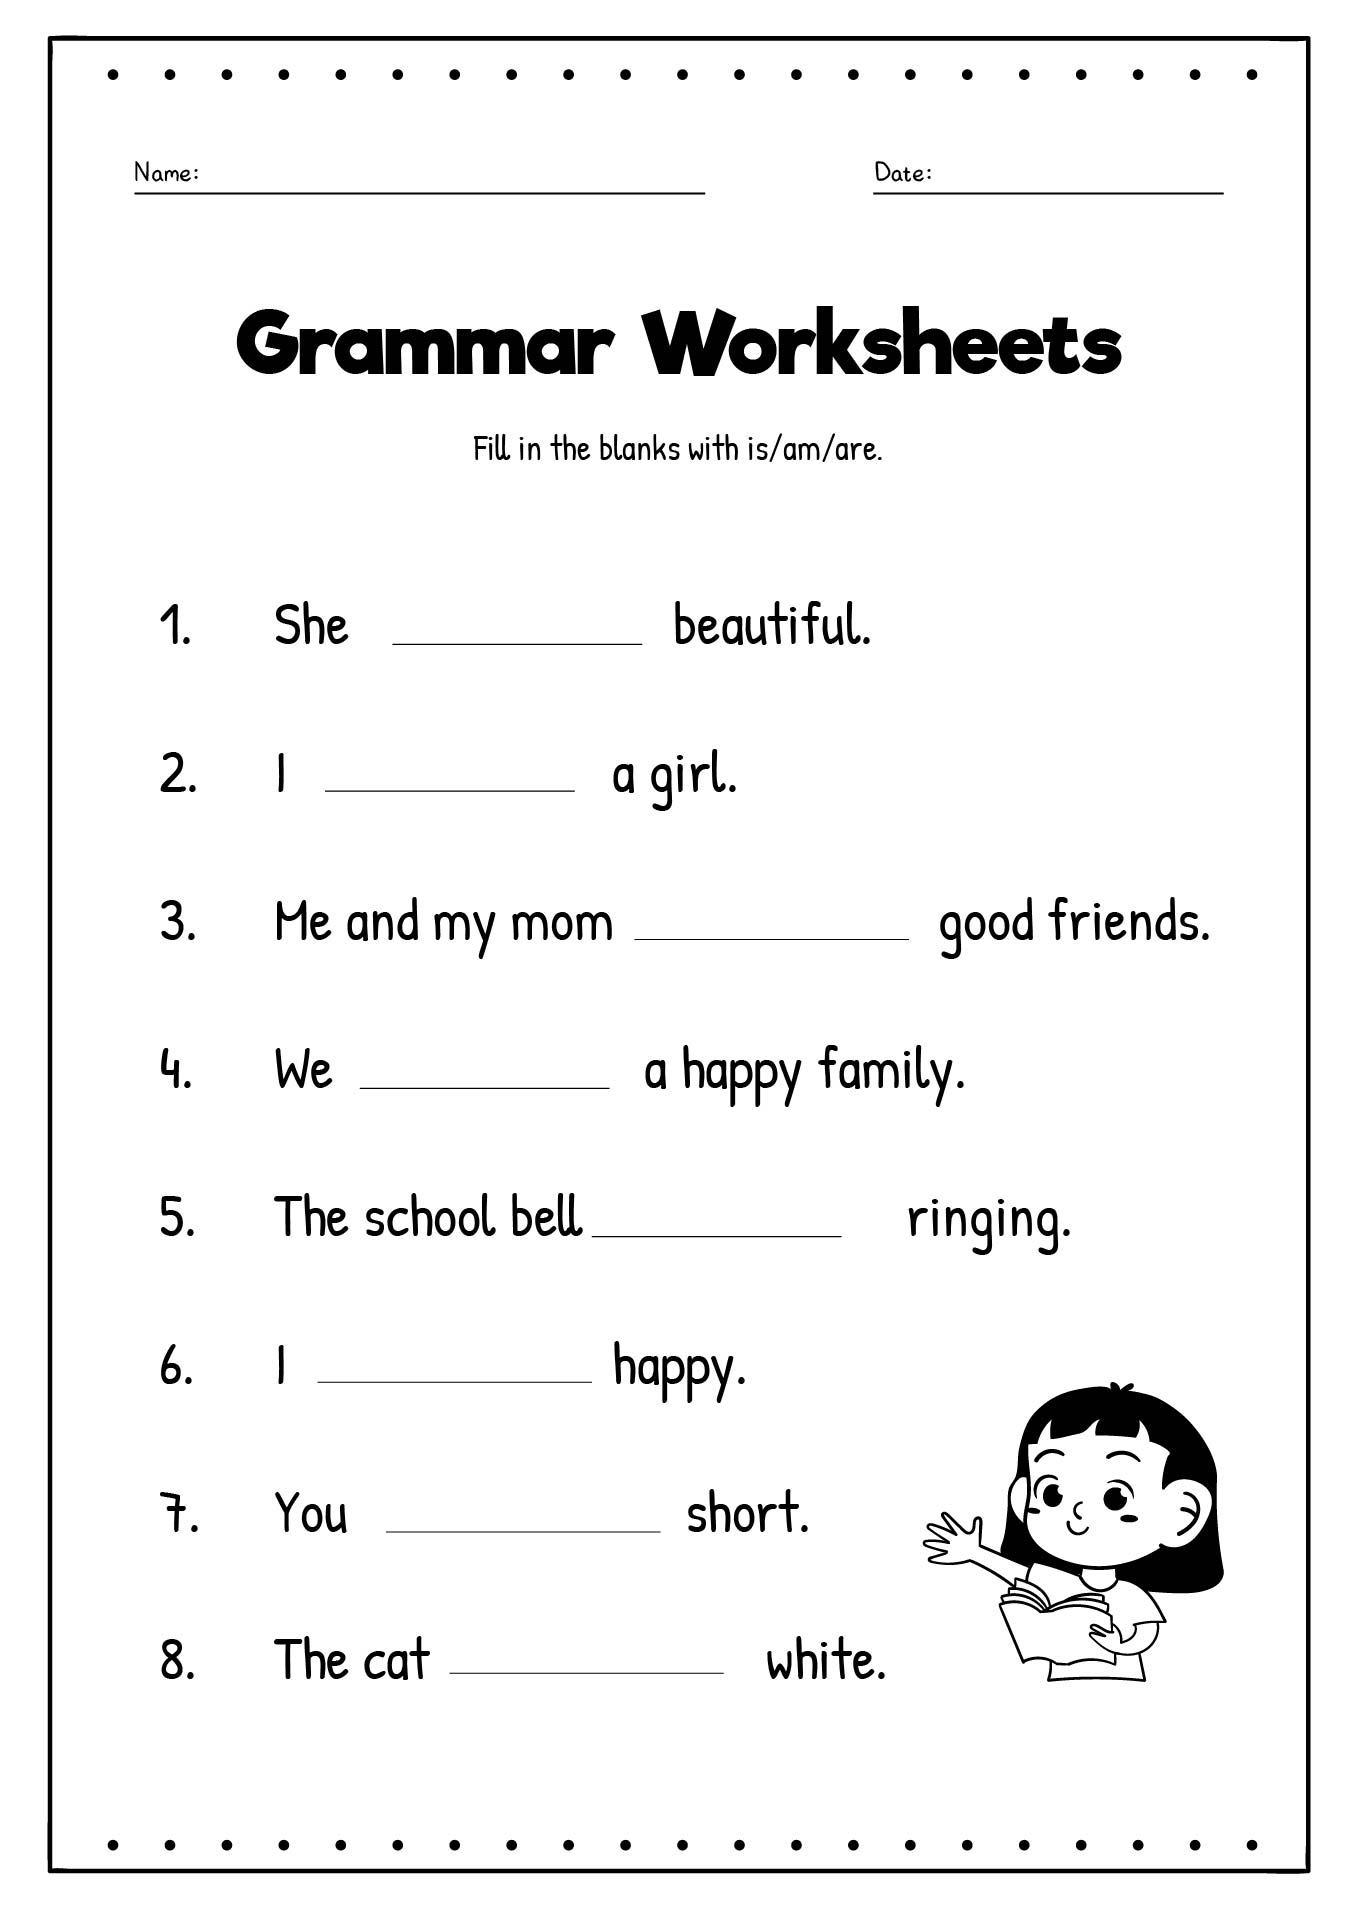 14-english-grammar-worksheets-pdf-worksheeto